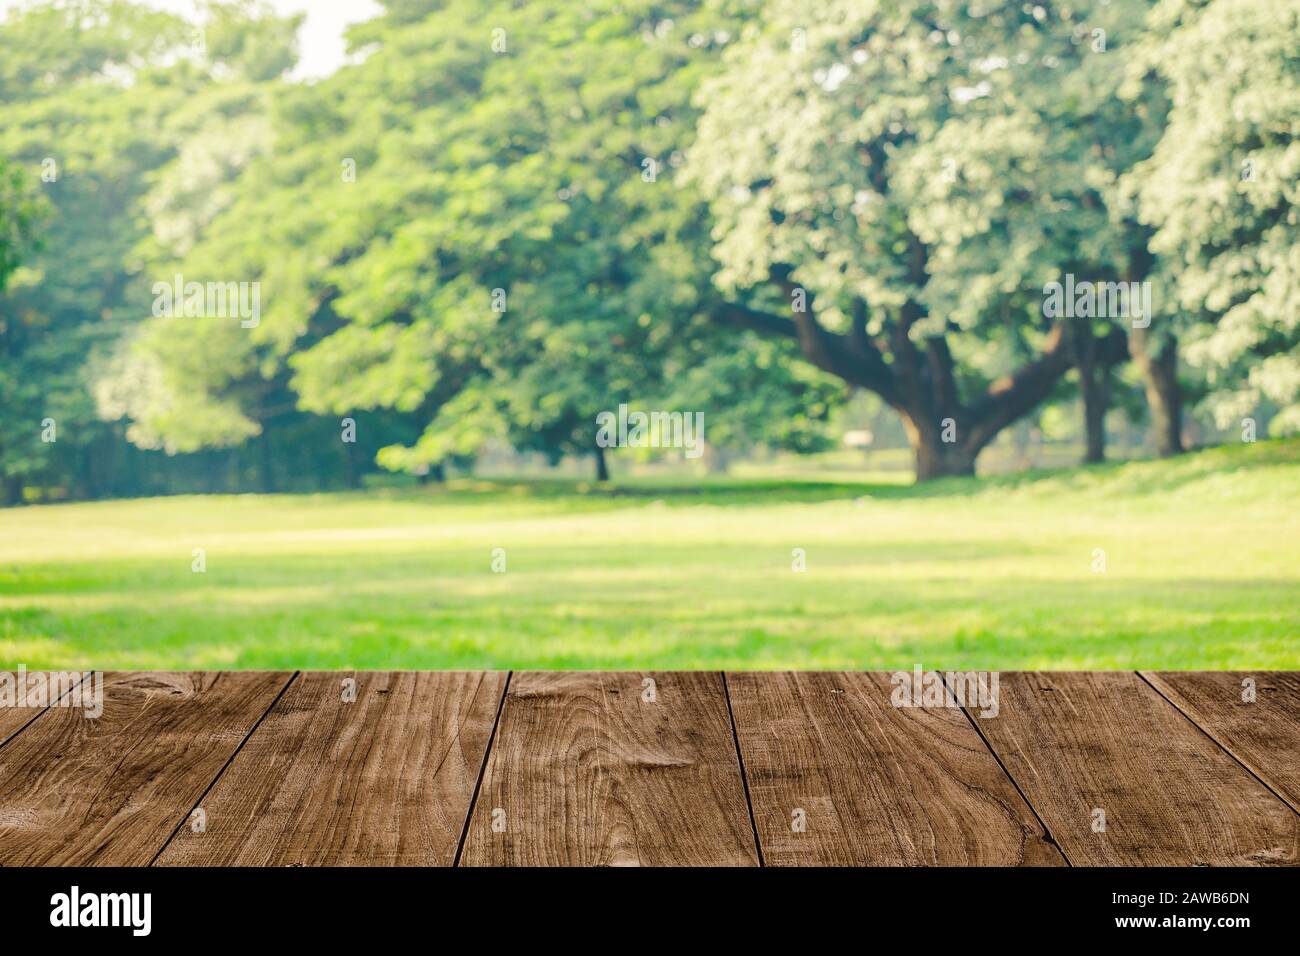 Holztisch mit schönem Grünpark-Rasenfeld mit großer Grünbaum-Landschaftsansicht für Naturprodukte Werbehintergrund Stockfoto